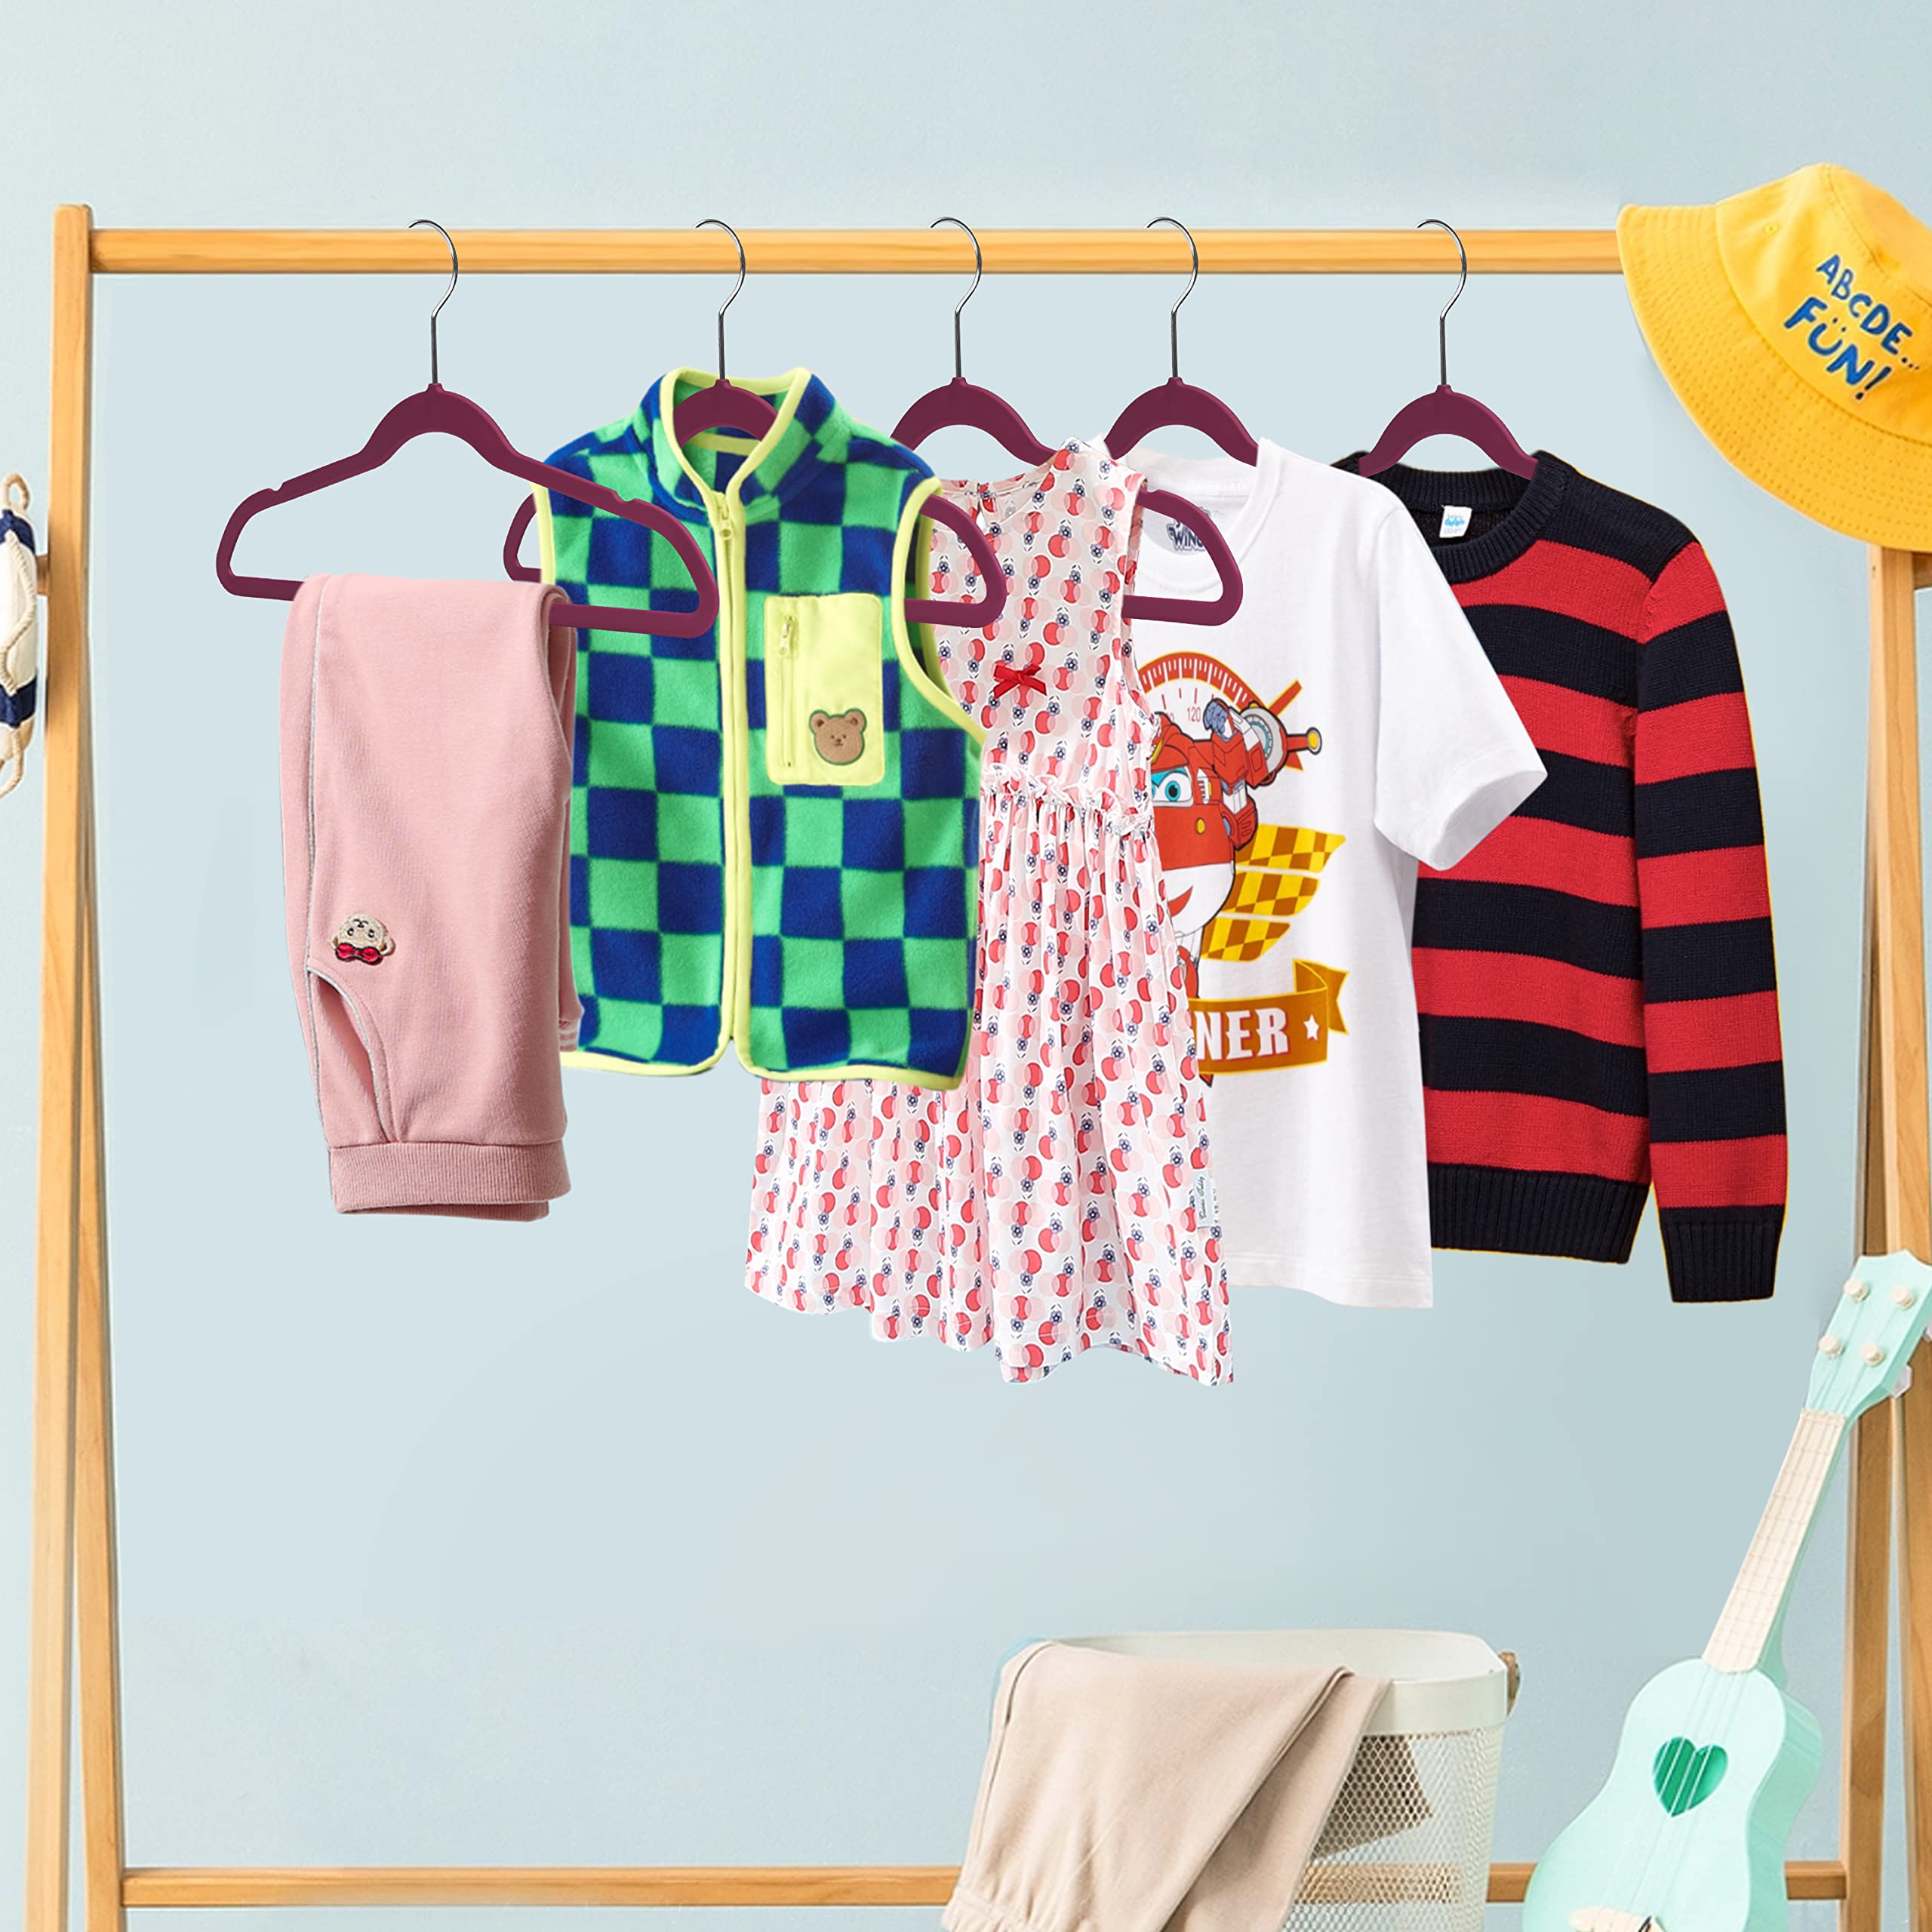 Quality Children's Plastic 30 Pack Non Velvet Non-Flocked Thin Compact Hangers Swivel Hook for Shirts Blouse Coats (Raspberry, 30)  - Like New